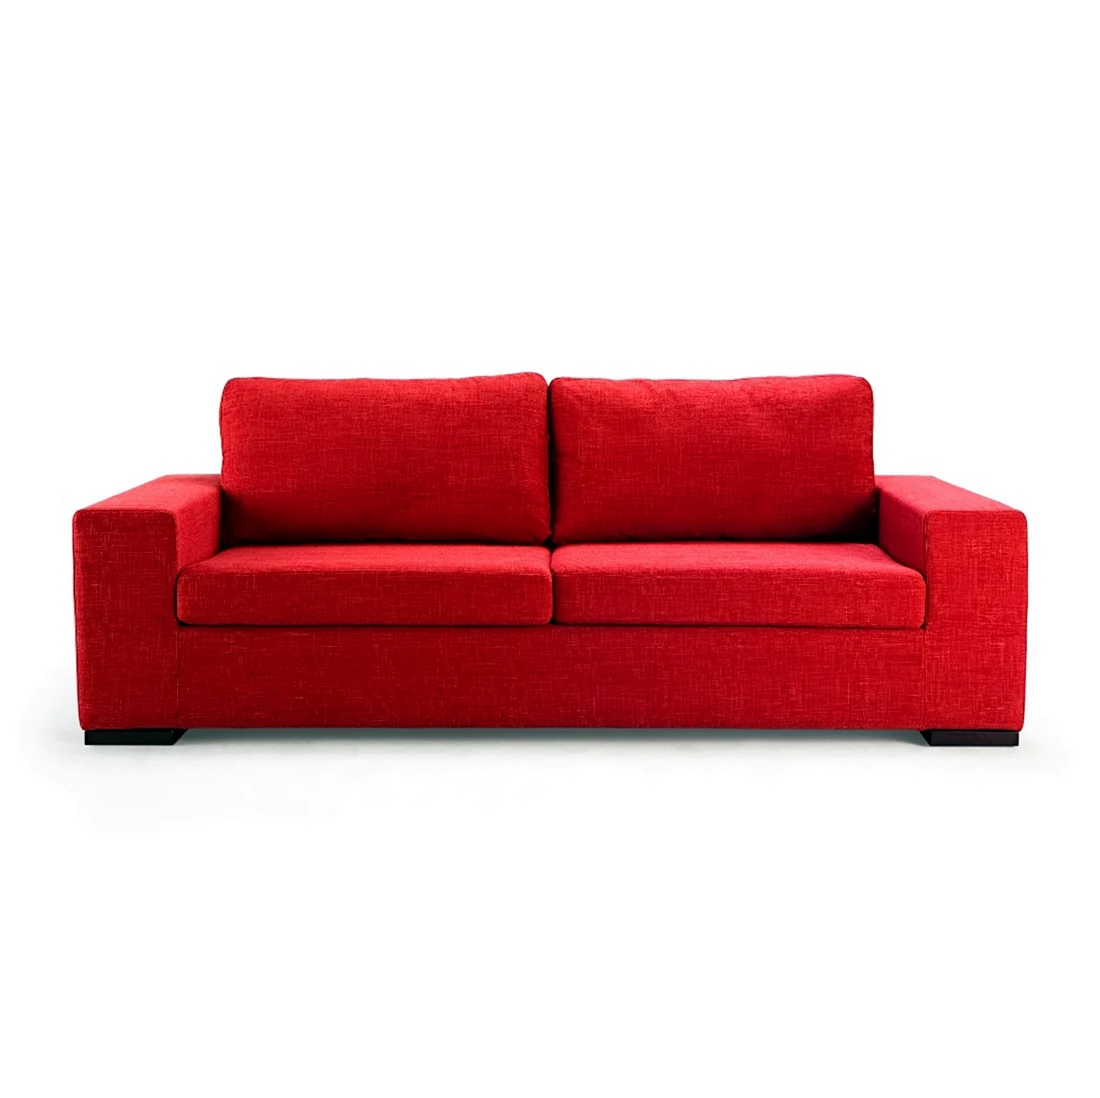 Красный диван